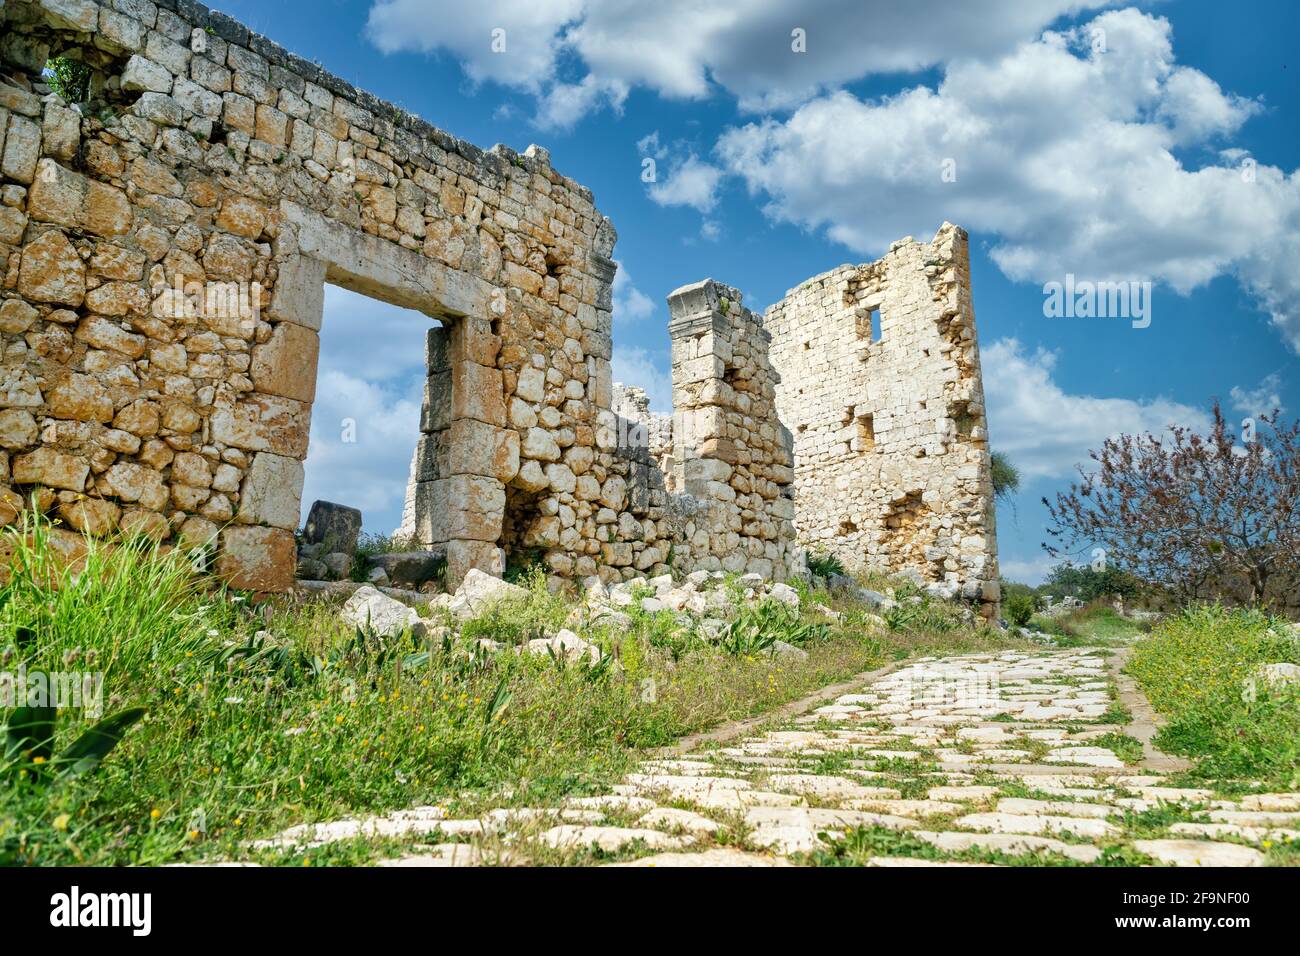 Ruinas de Kanlidivane (Canytelis), Mersin, Turquía Foto de stock